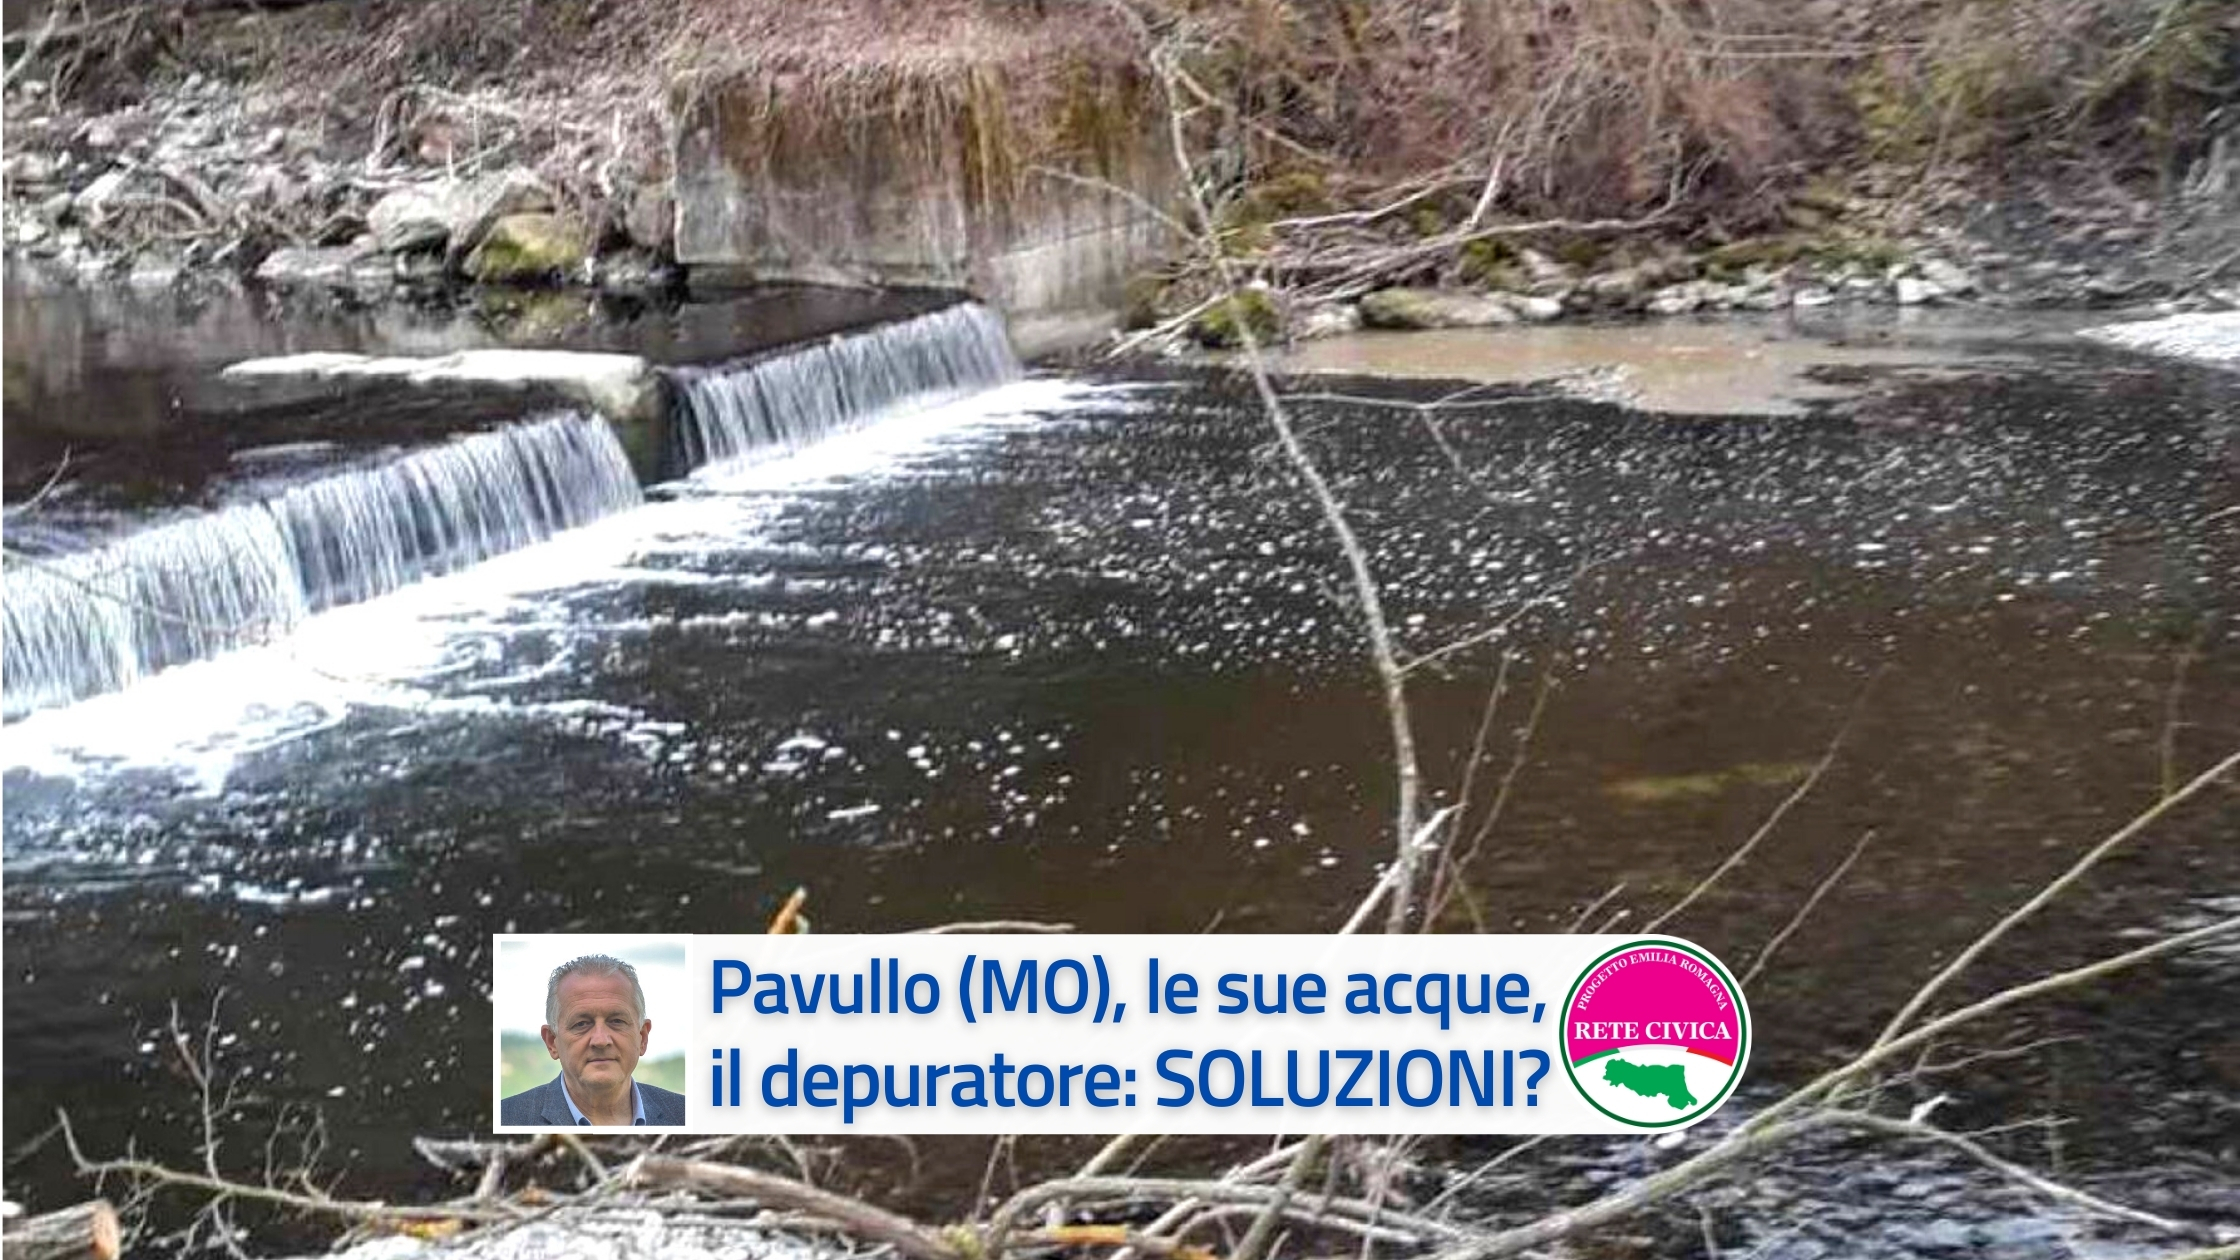 Al momento stai visualizzando Pavullo (MO), le sue acque, il depuratore: soluzioni?